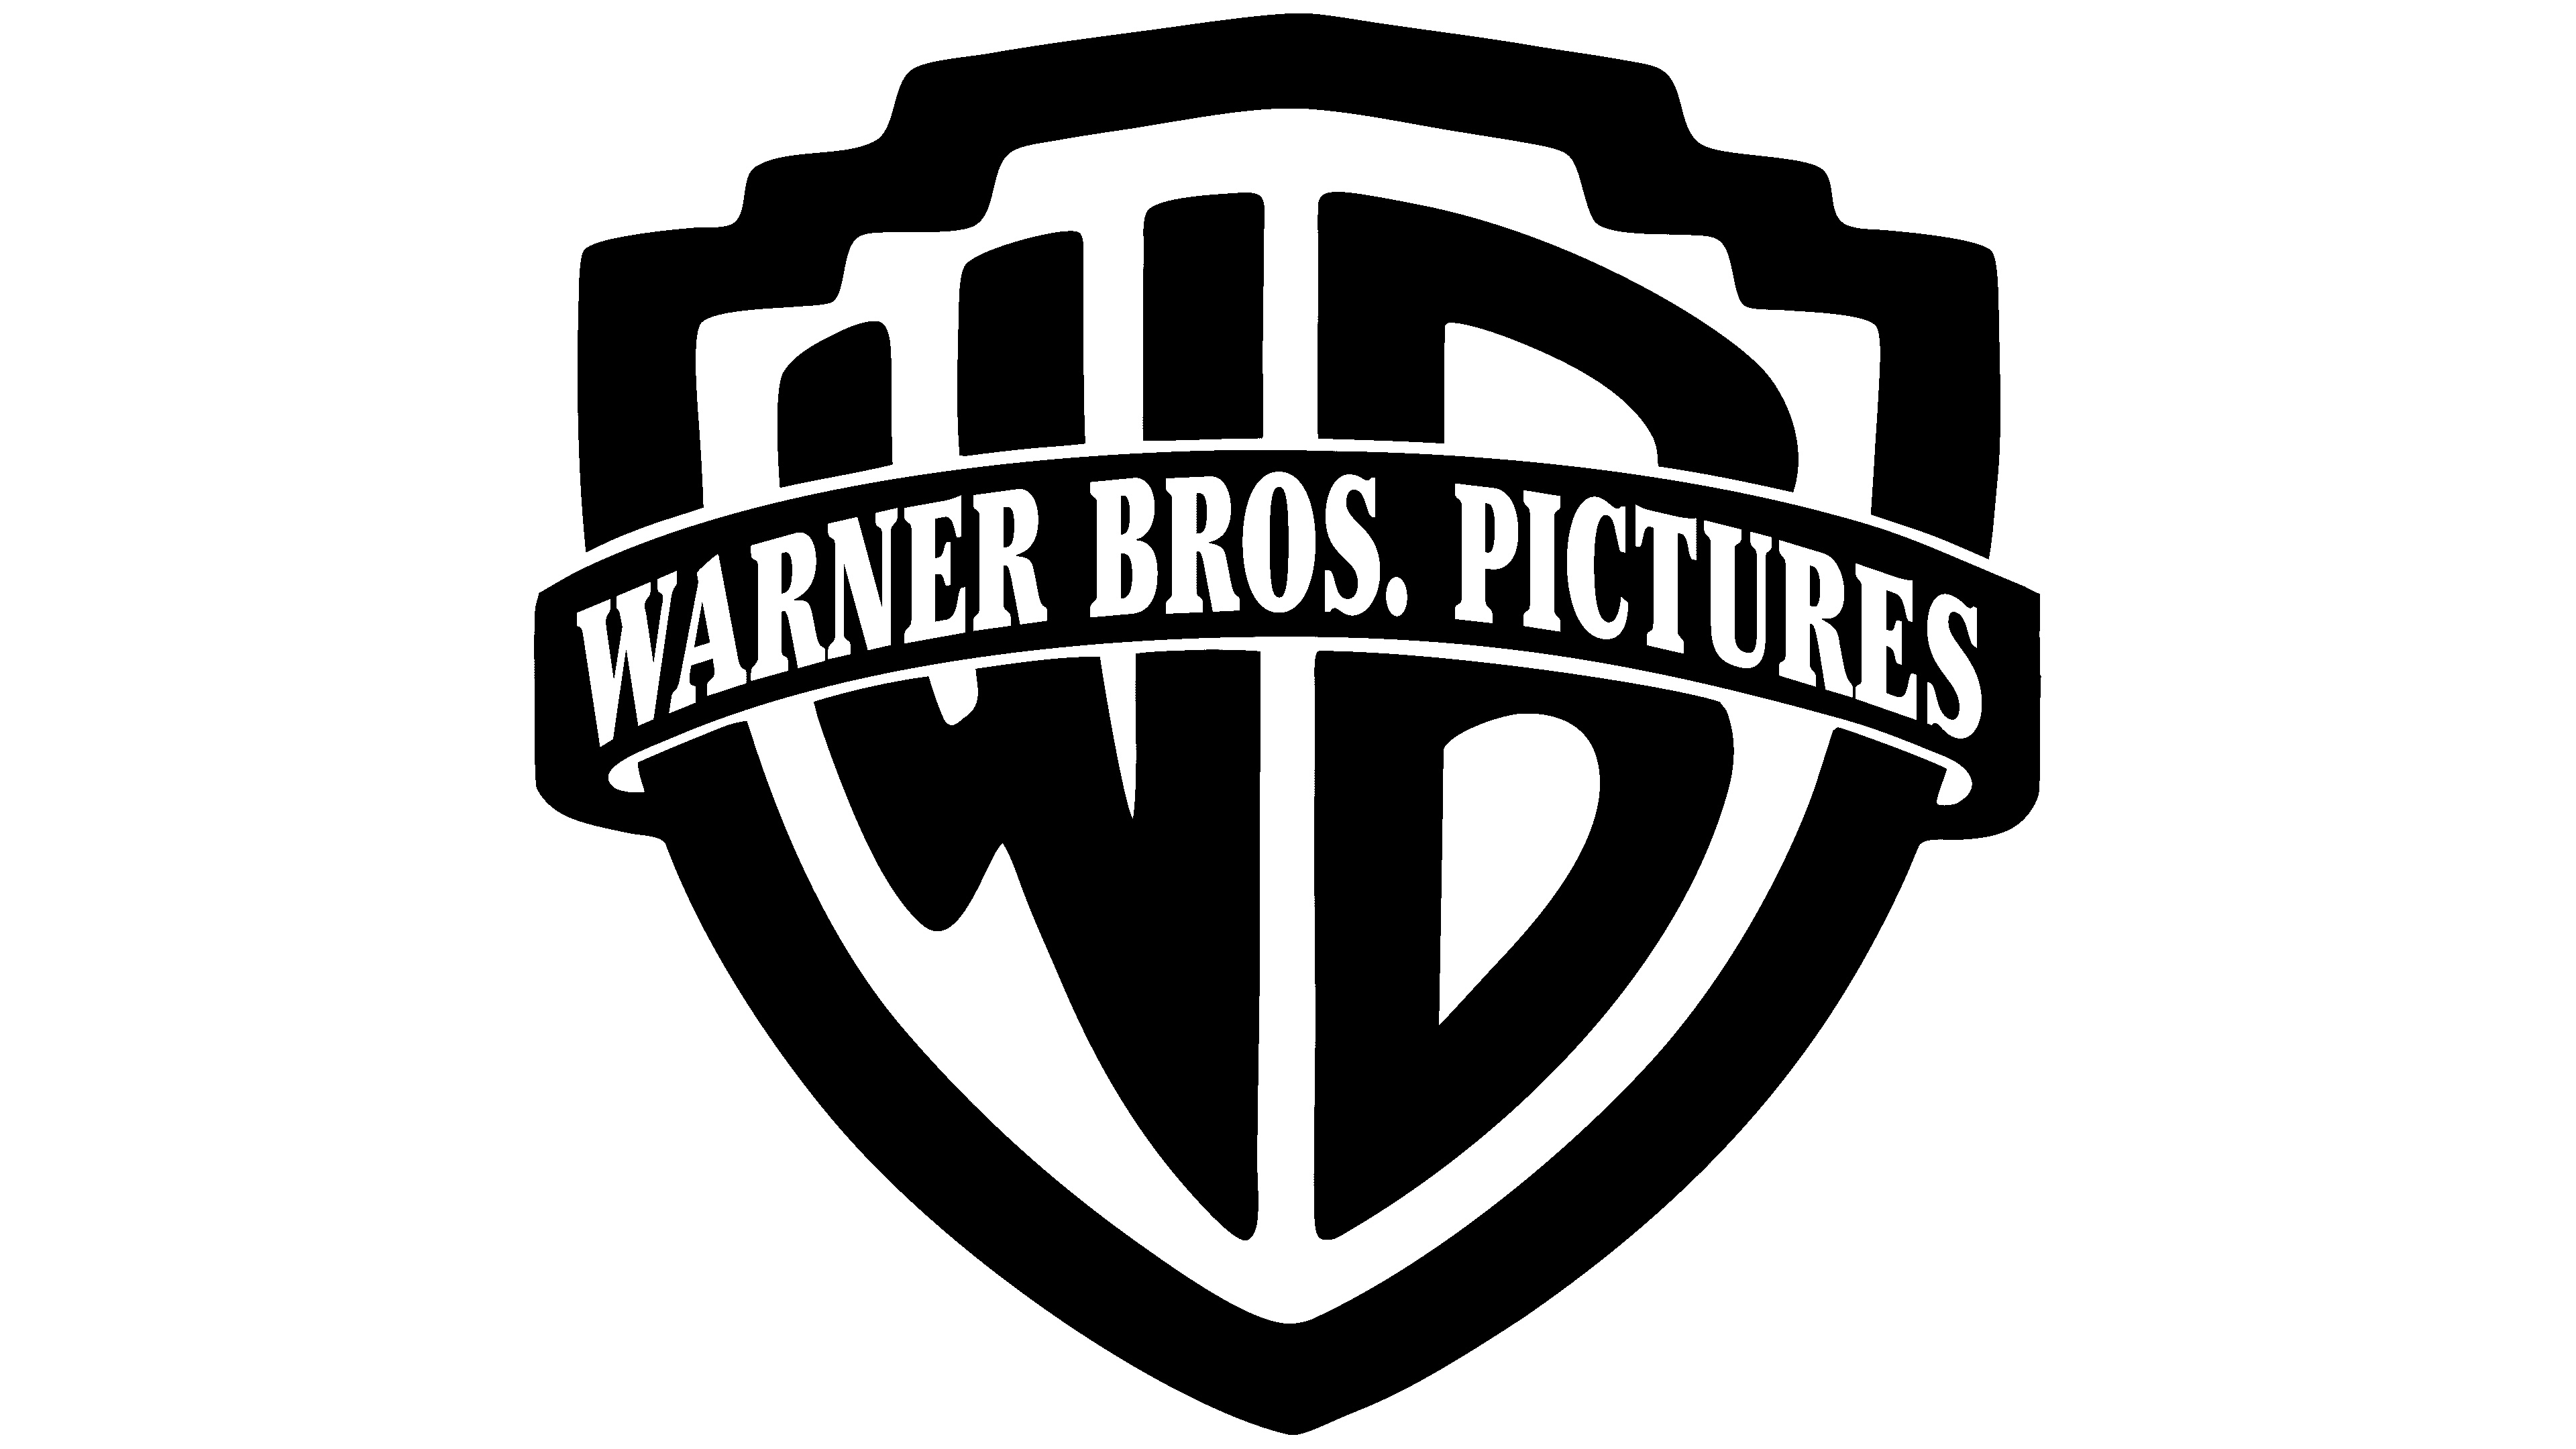 Warner Bros. logo, Symbol meaning, Brand history, Recognizable emblem, 3840x2160 4K Desktop